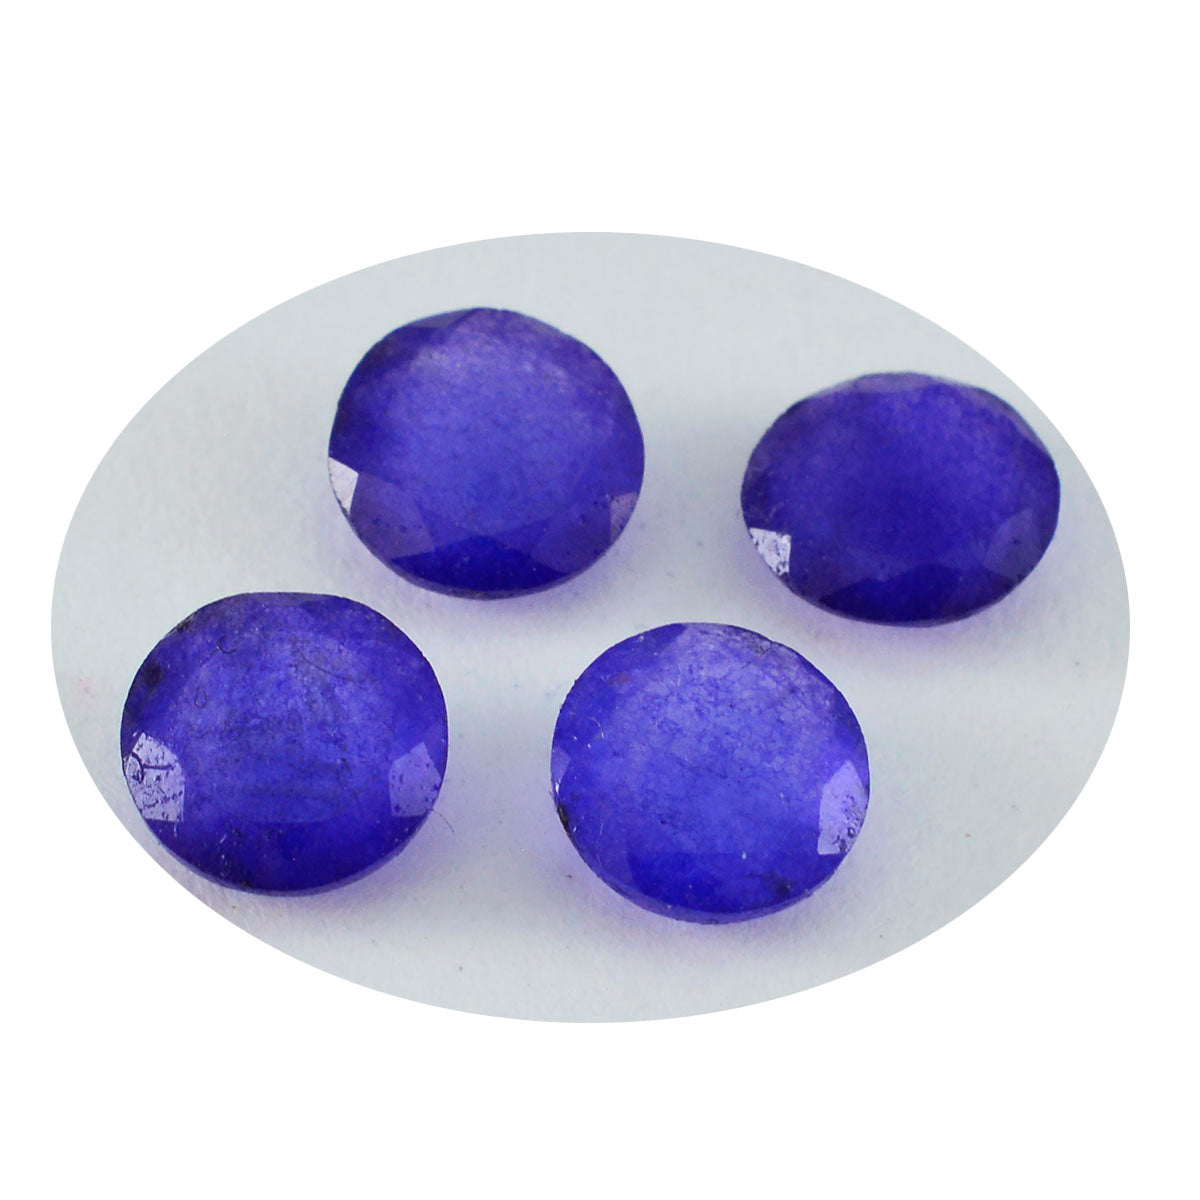 riyogems 1шт натуральная голубая яшма ограненная 11х11 мм круглая форма а+качество драгоценный камень